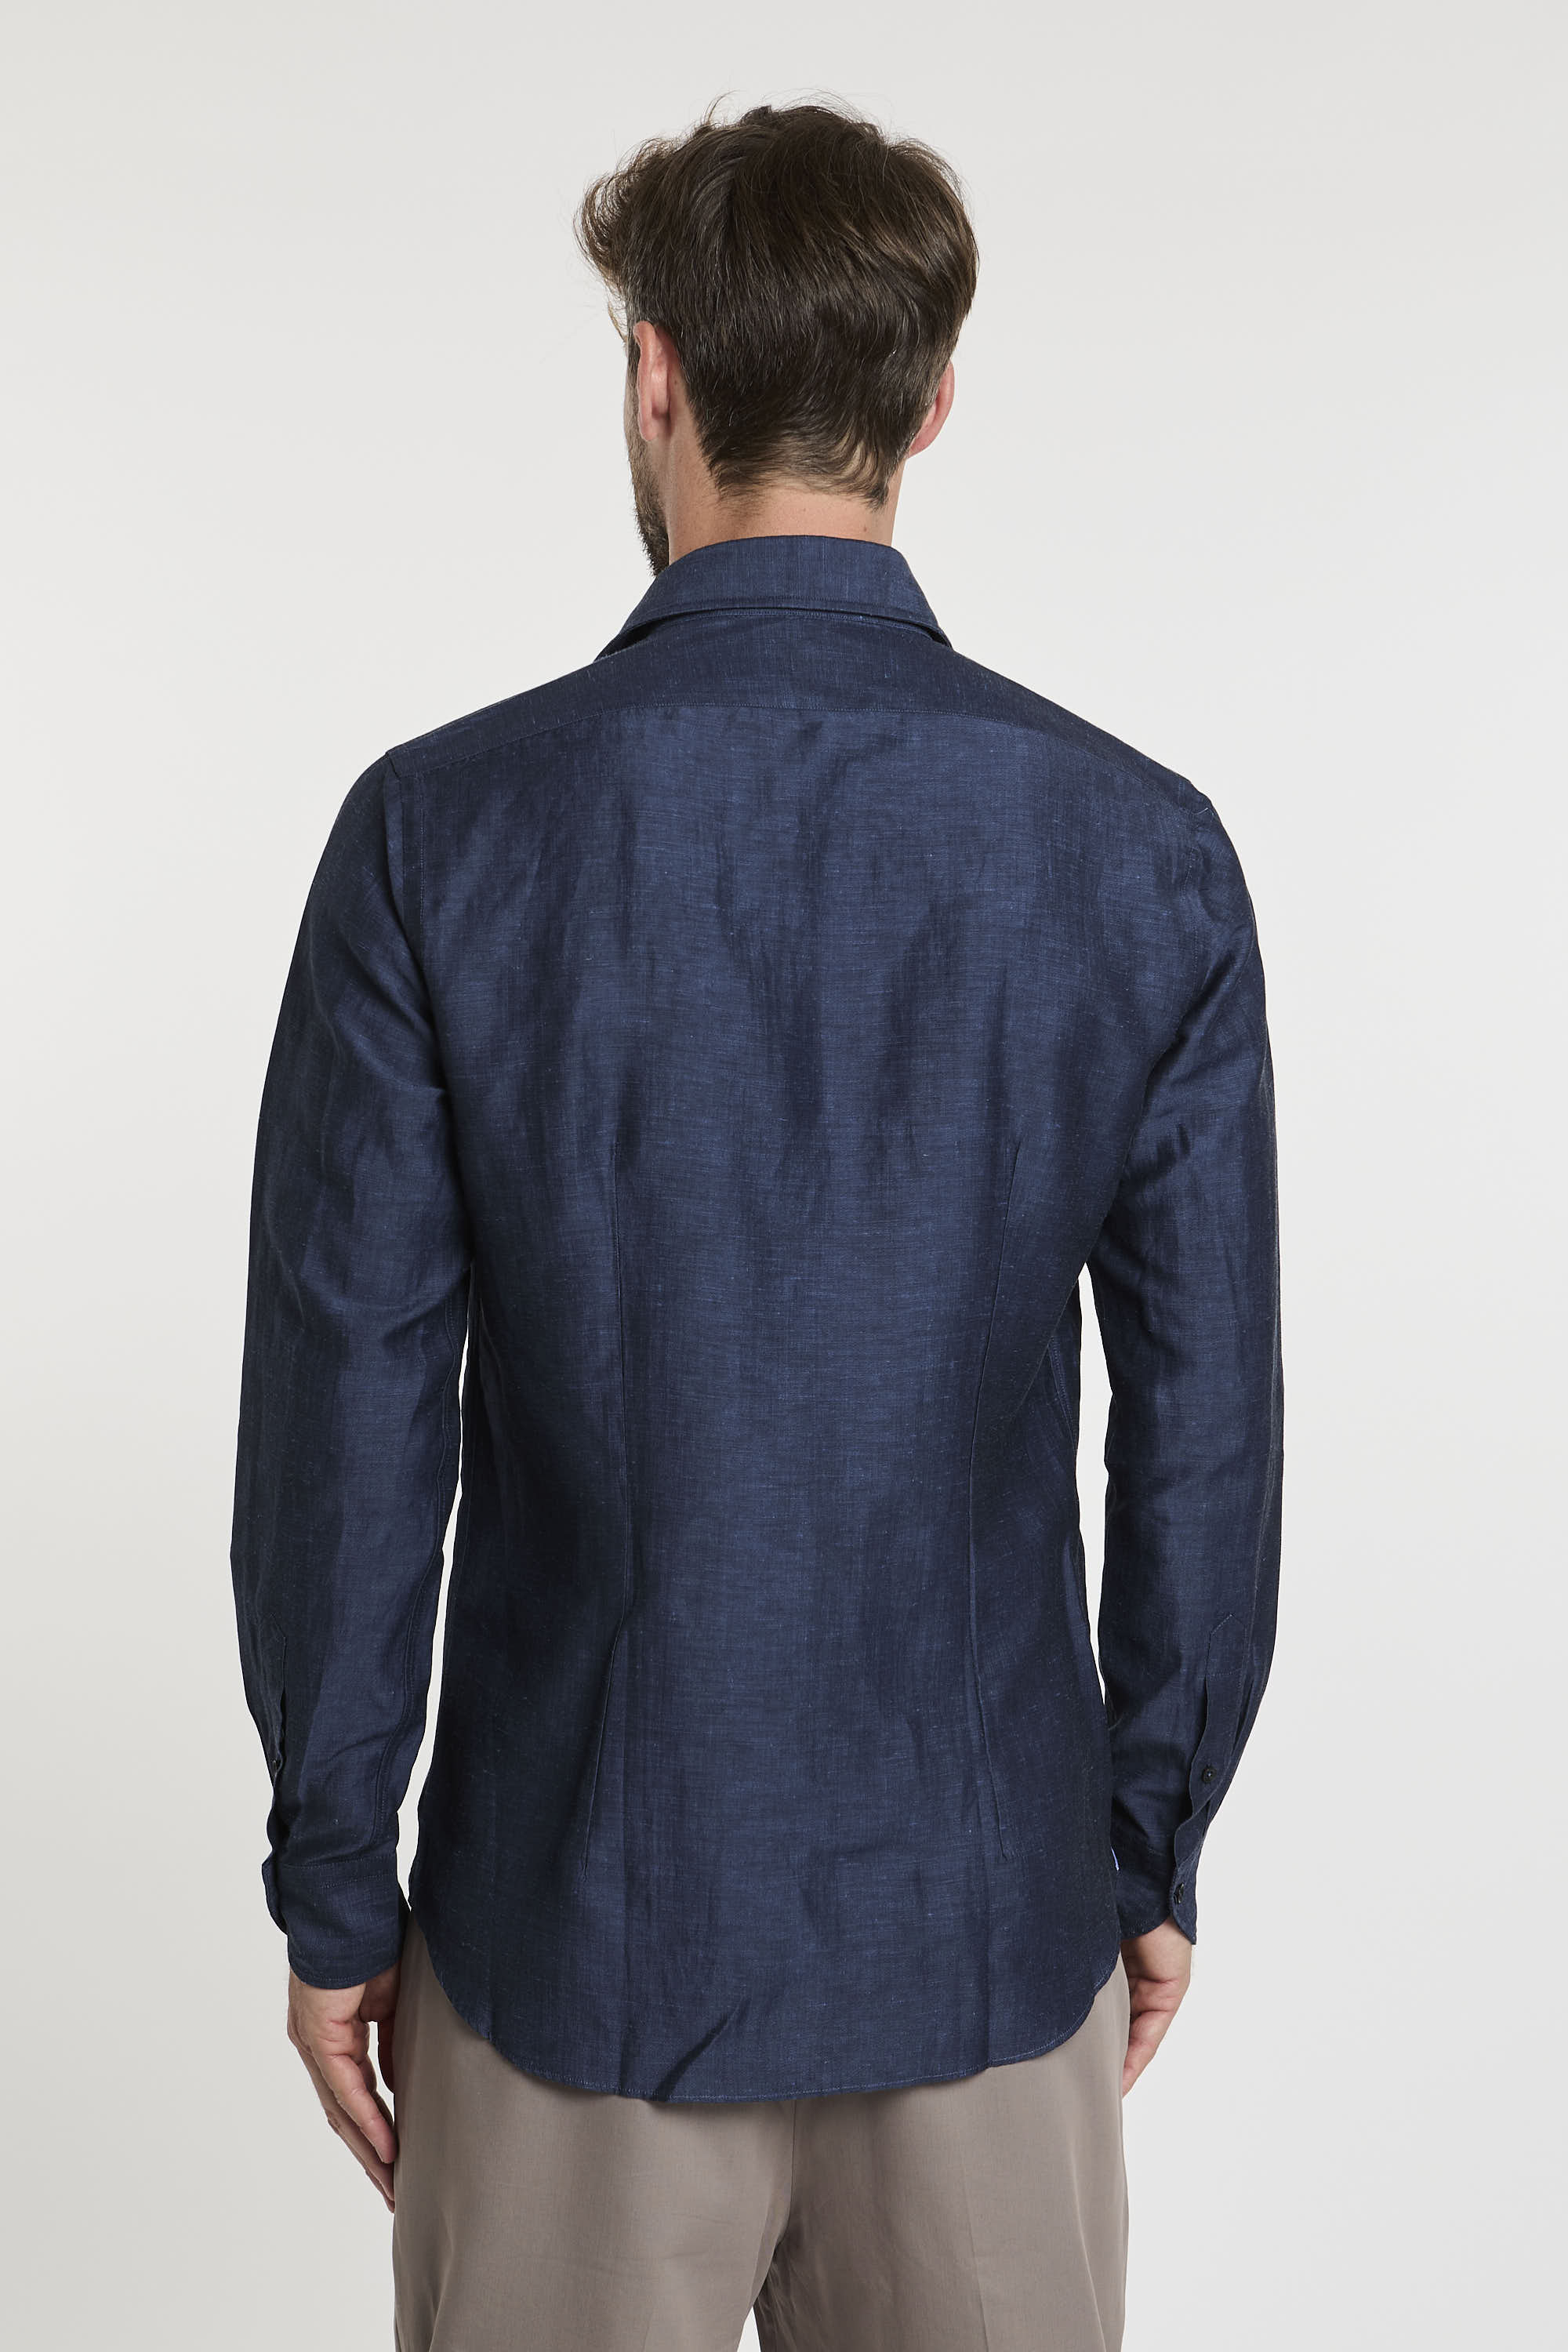 Xacus Wool/Linen Blend Shirt Blue-5